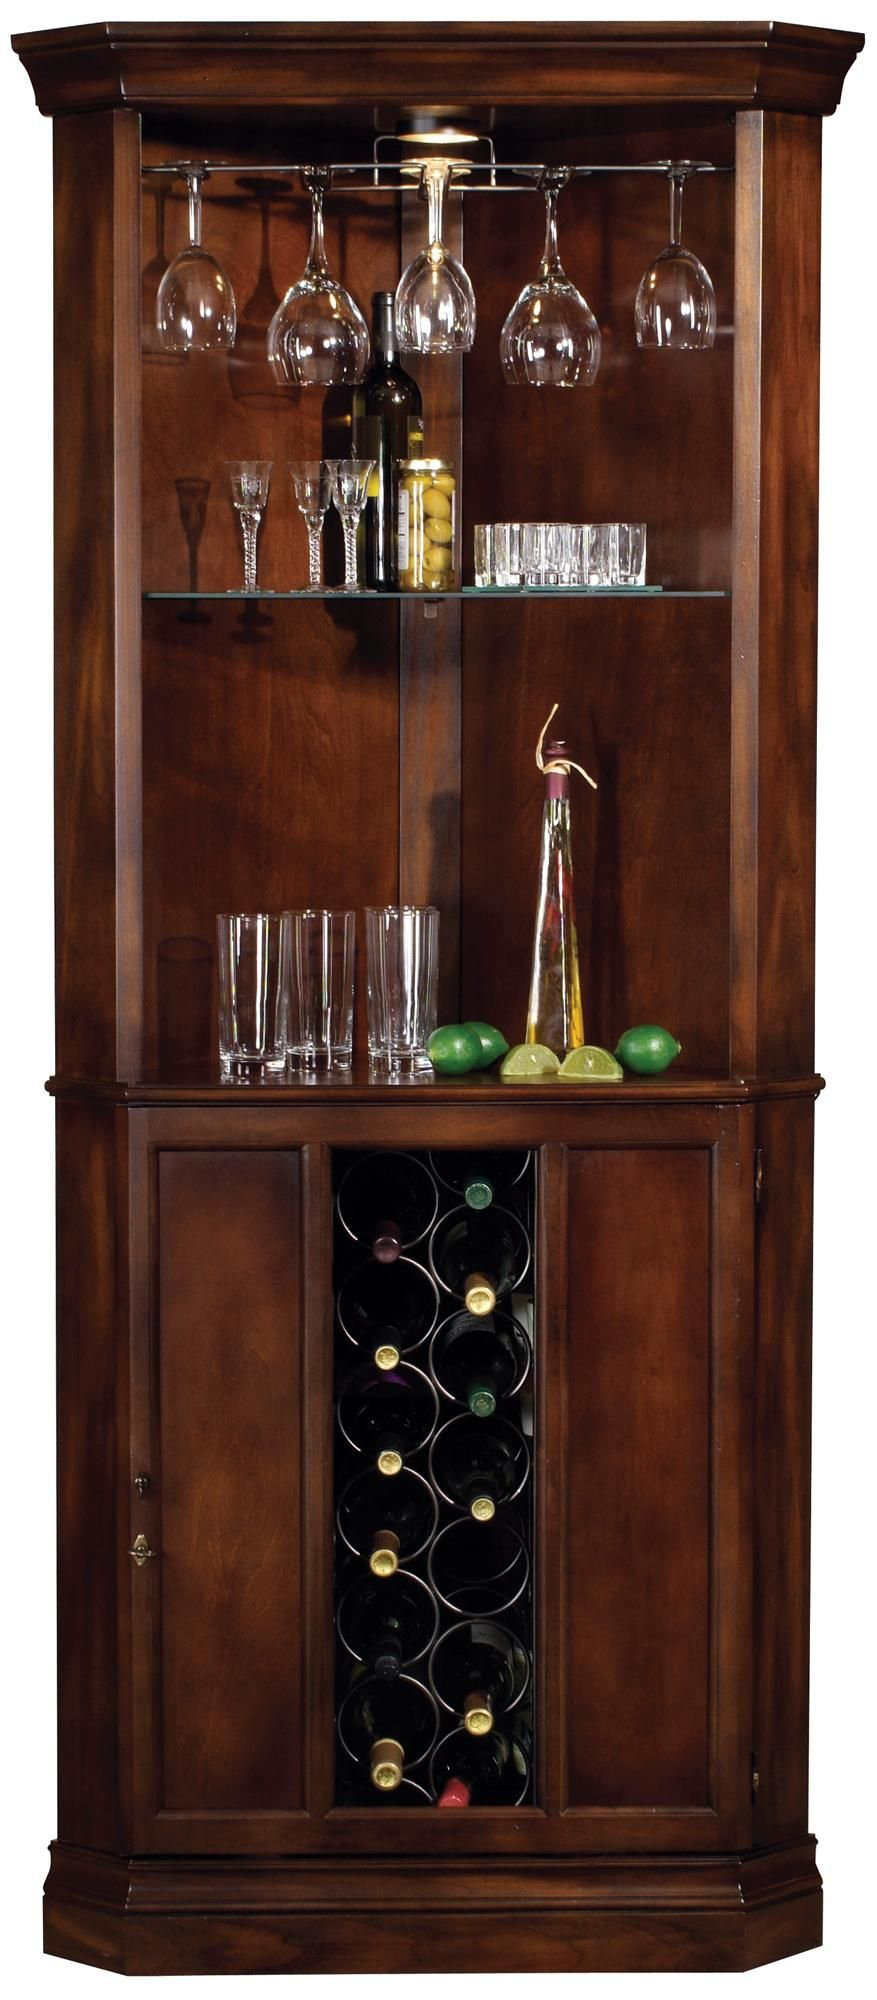 Howard Miller Piedmont Rustic Cherry Corner Bar Cabinet regarding size 877 X 2000